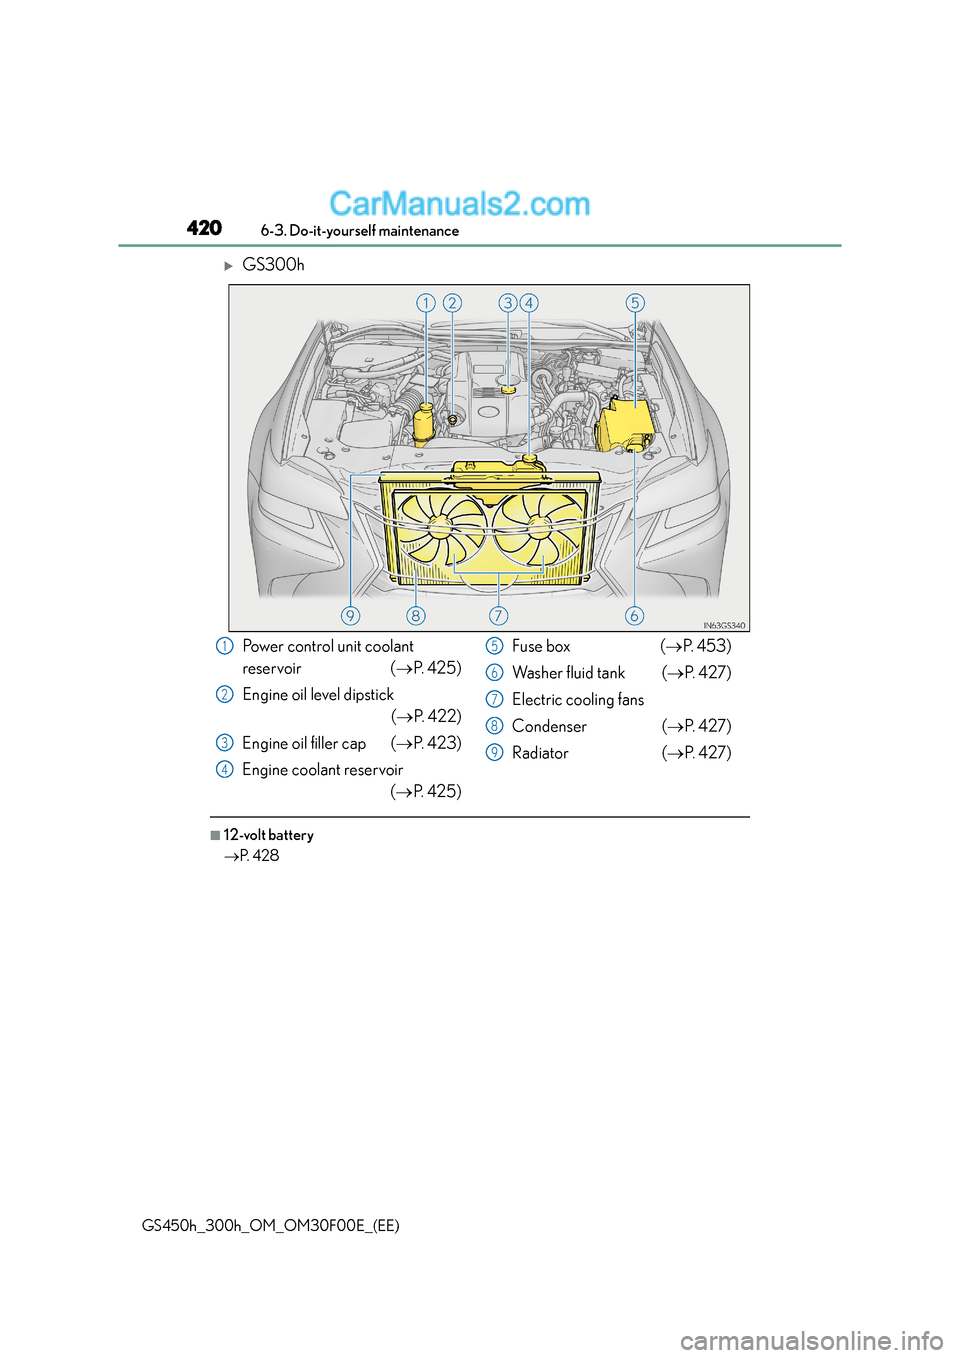 Lexus GS300h 2016  Owners Manual 4206-3. Do-it-yourself maintenance
GS450h_300h_OM_OM30F00E_(EE)
�XGS300h
■12-volt battery
→P.  4 2 8
Power control unit coolant 
reservoir ( →P.  4 2 5 )
Engine oil level dipstick (→ P. 422)
E